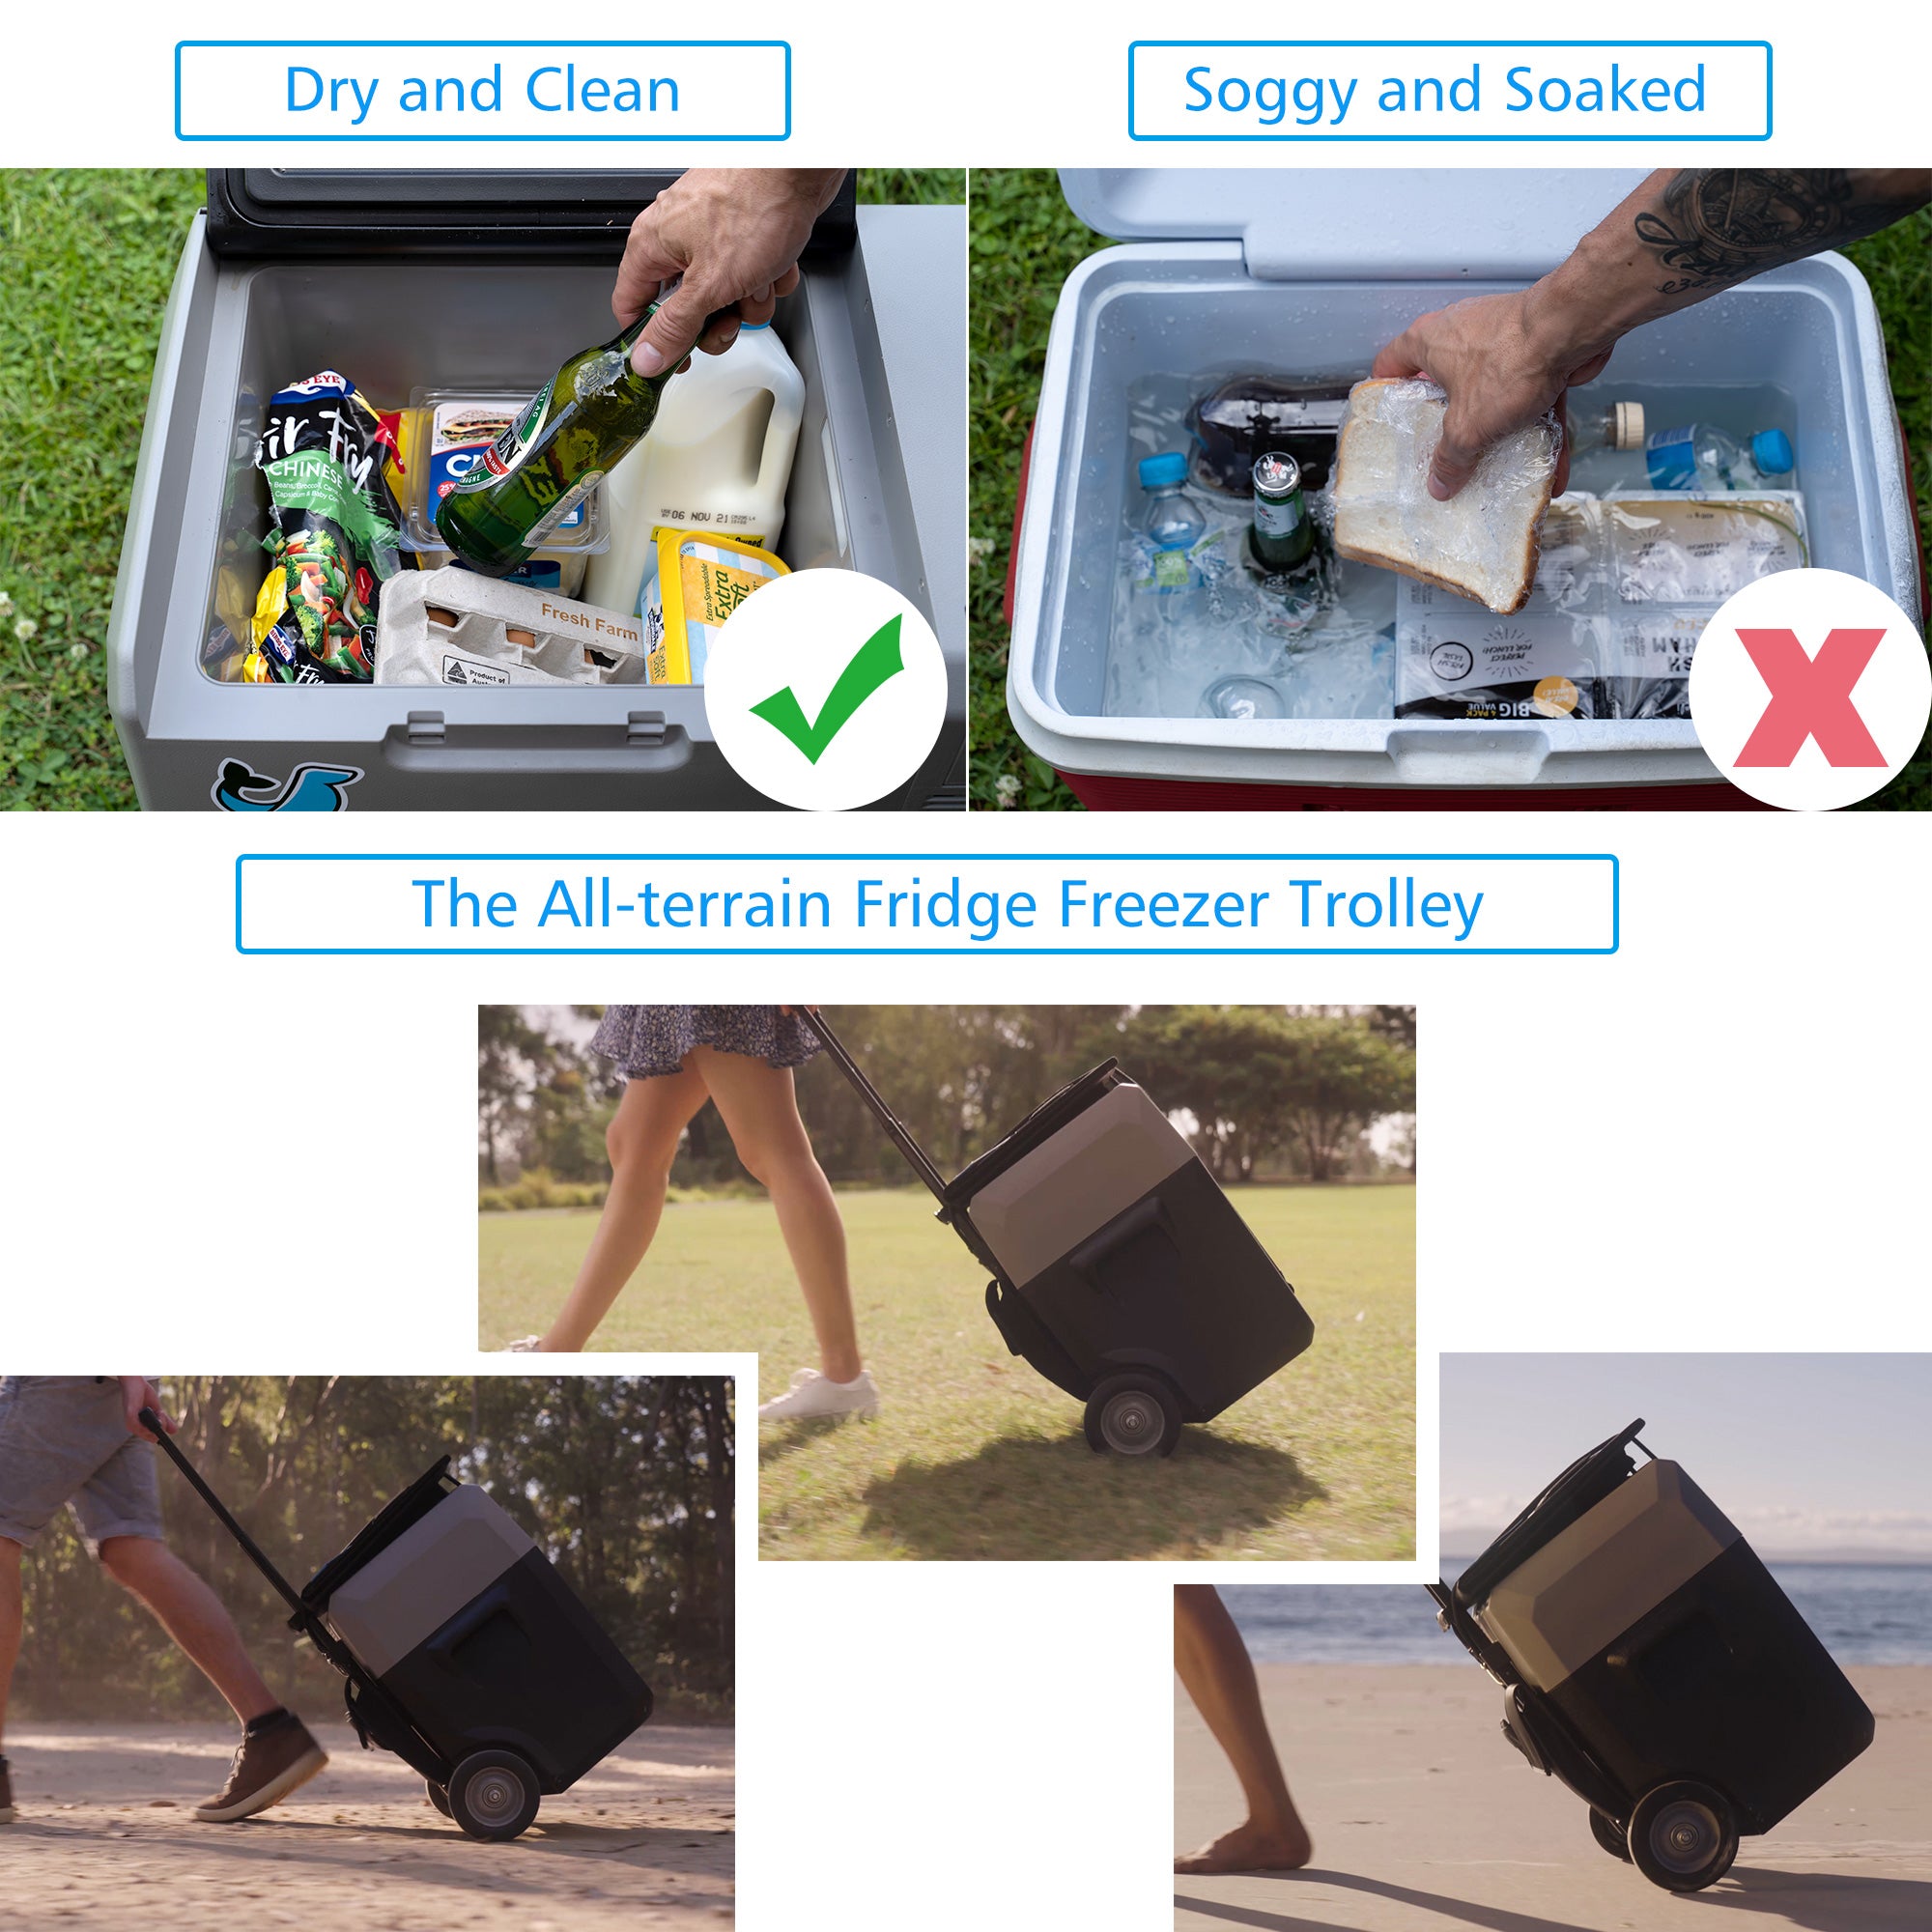 ACOPOWER LionCooler Pro Portable Solar Fridge Freezer, 32 Quarts